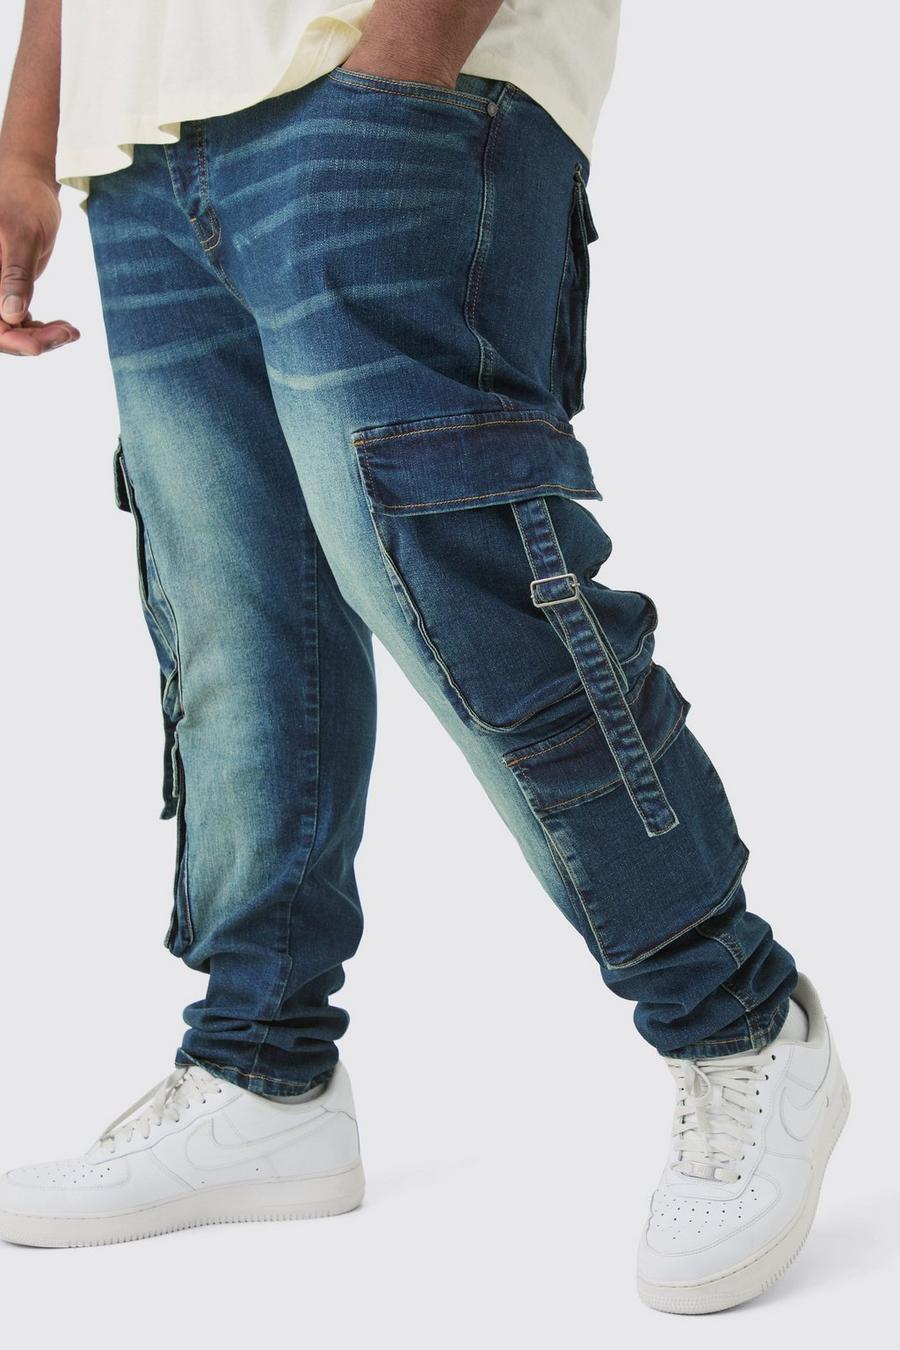 Jeans Plus Size in Stretch Skinny Fit in lavaggio scuro con tasche Cargo, Dark wash